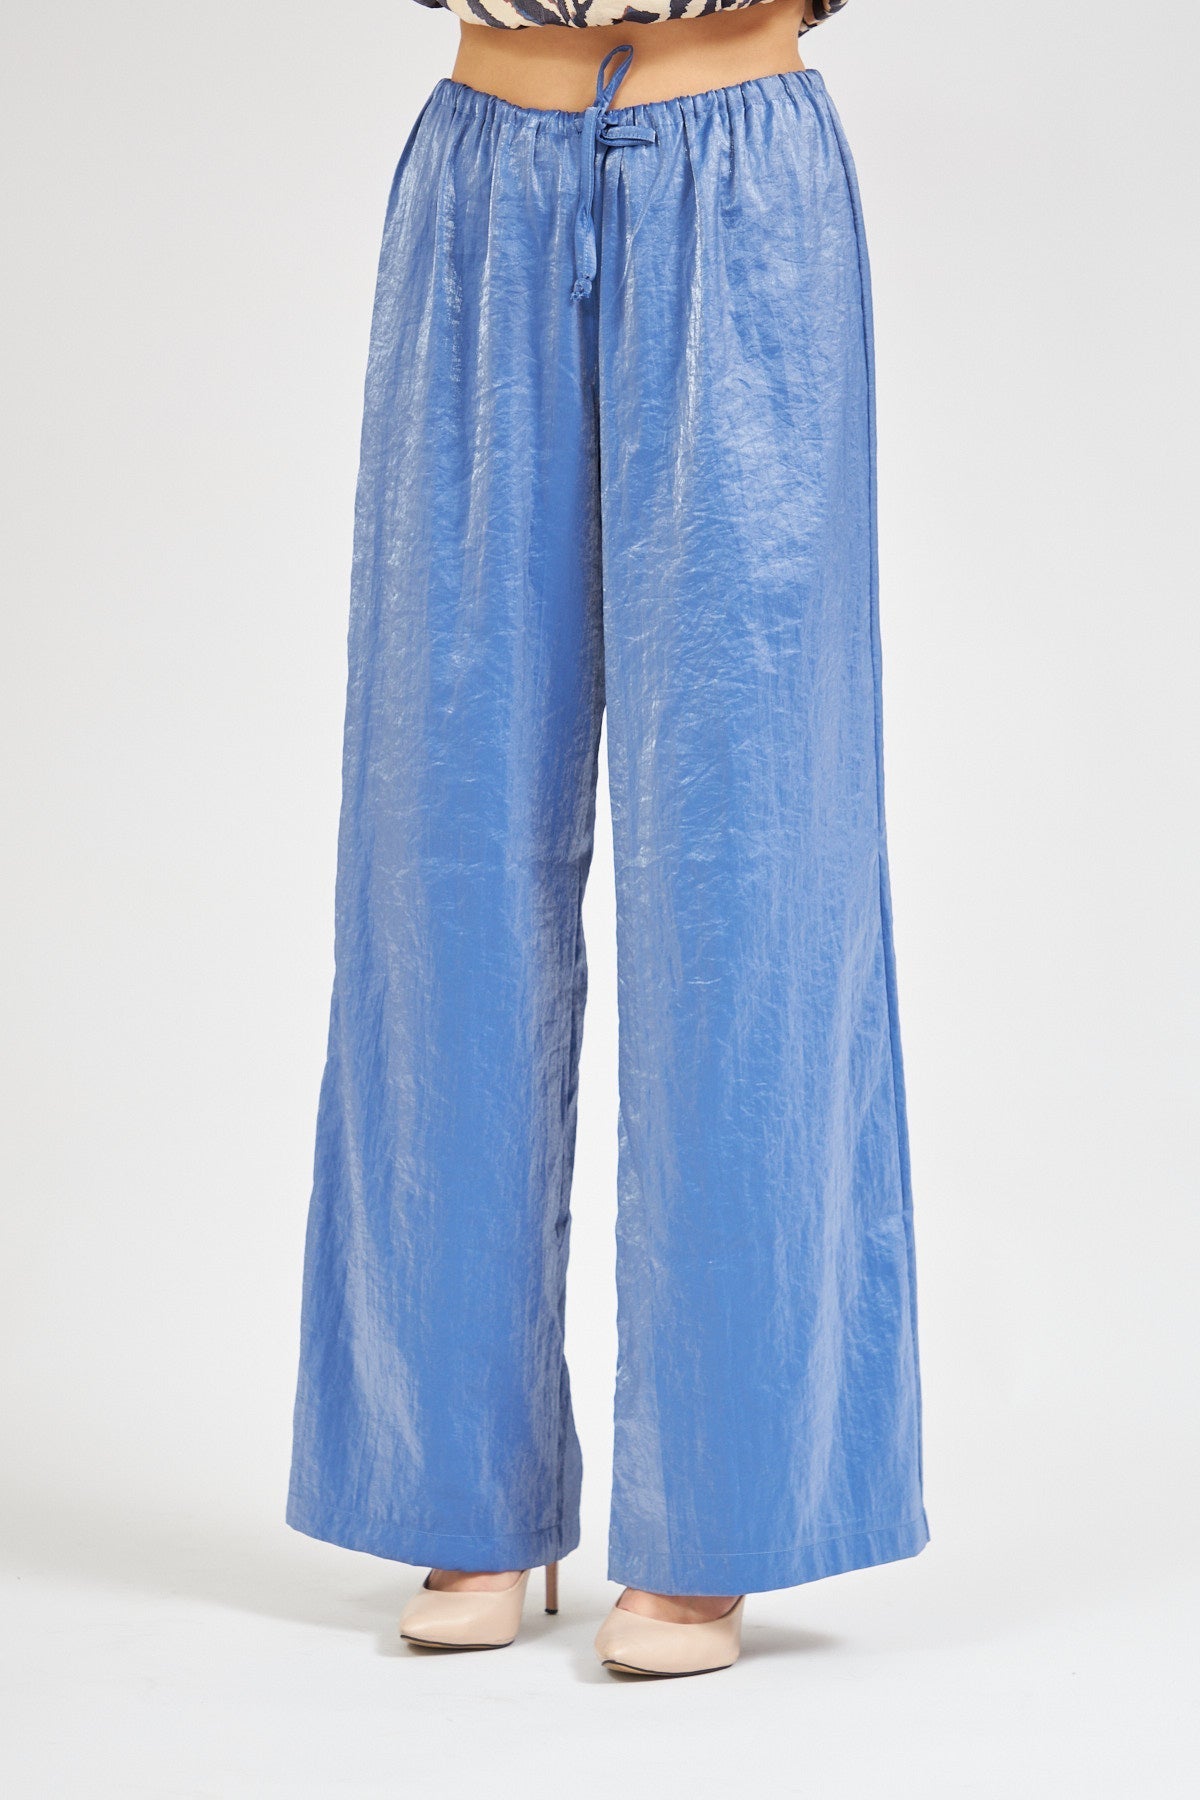 High Waist Shiny Trousers Blue - Lebbse